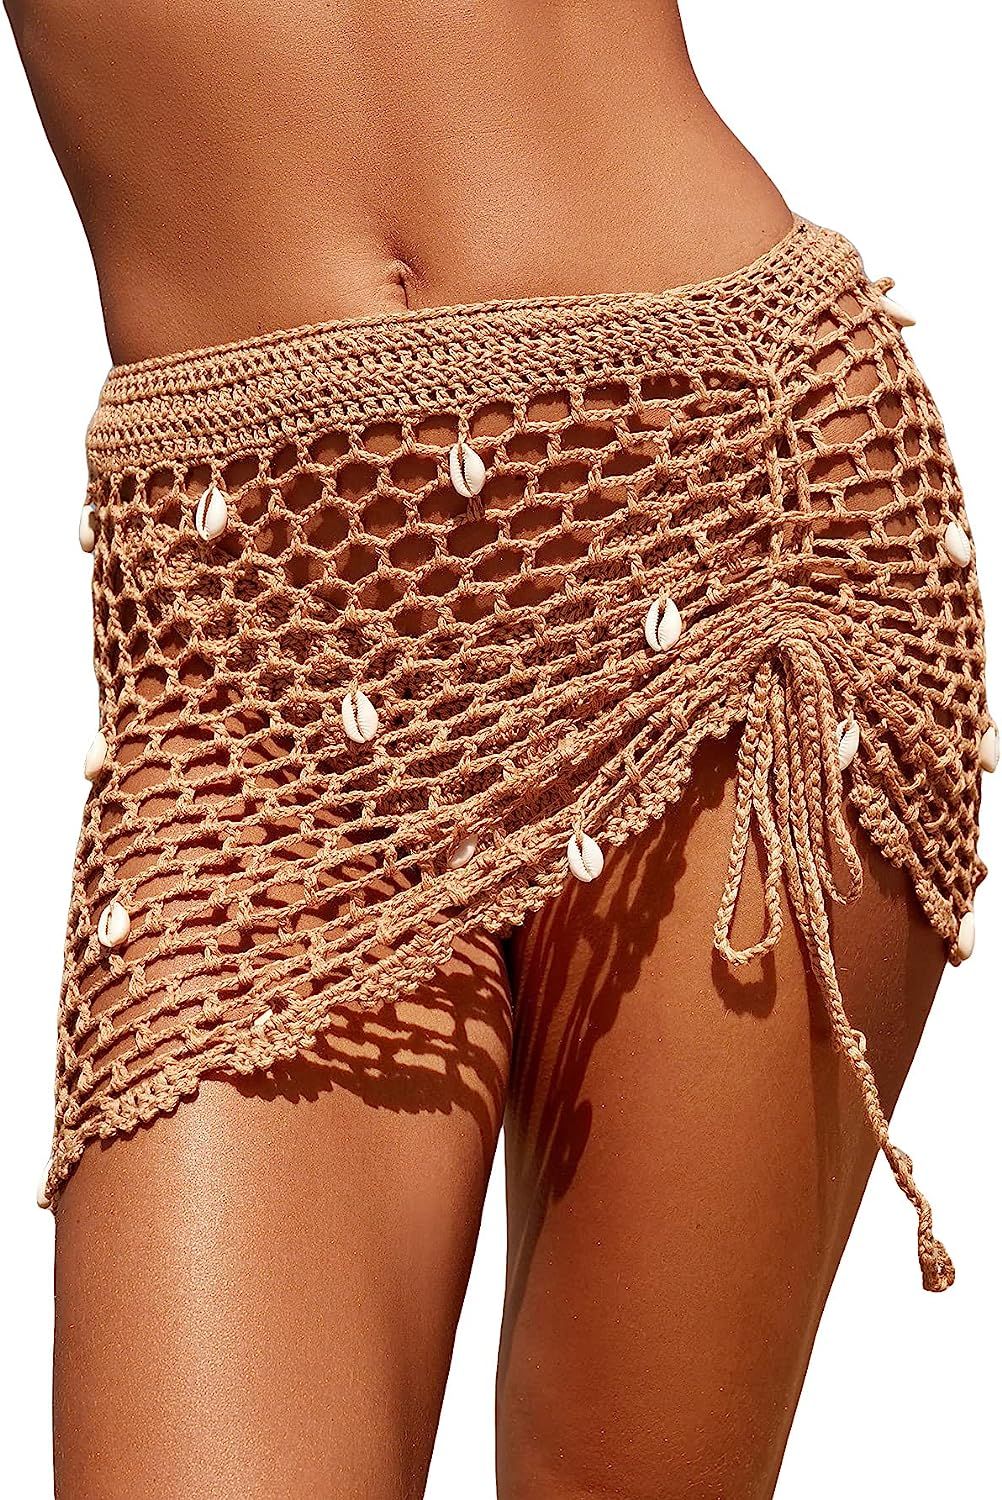 MakeMeChic Women's Crochet Cover Up Skirt Tassel Knit Mini Beach Cover Up | Amazon (US)